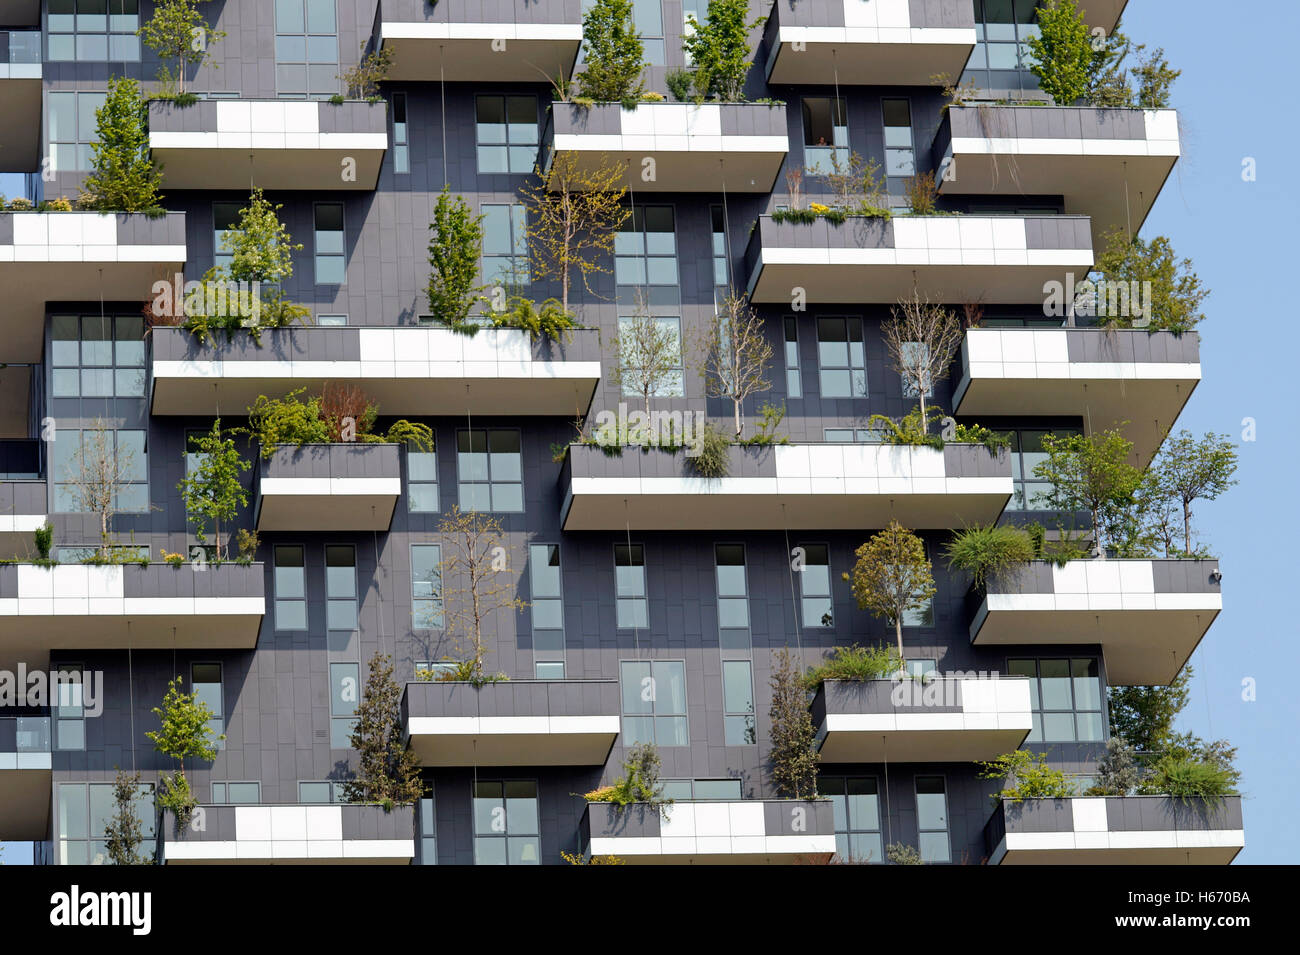 Balcon, fleurs, jardin, fleur, vert, d'un balcon, terrasse, Calgary, moderne, neuf, immeuble, usine, printemps, orange, toit, hom Banque D'Images